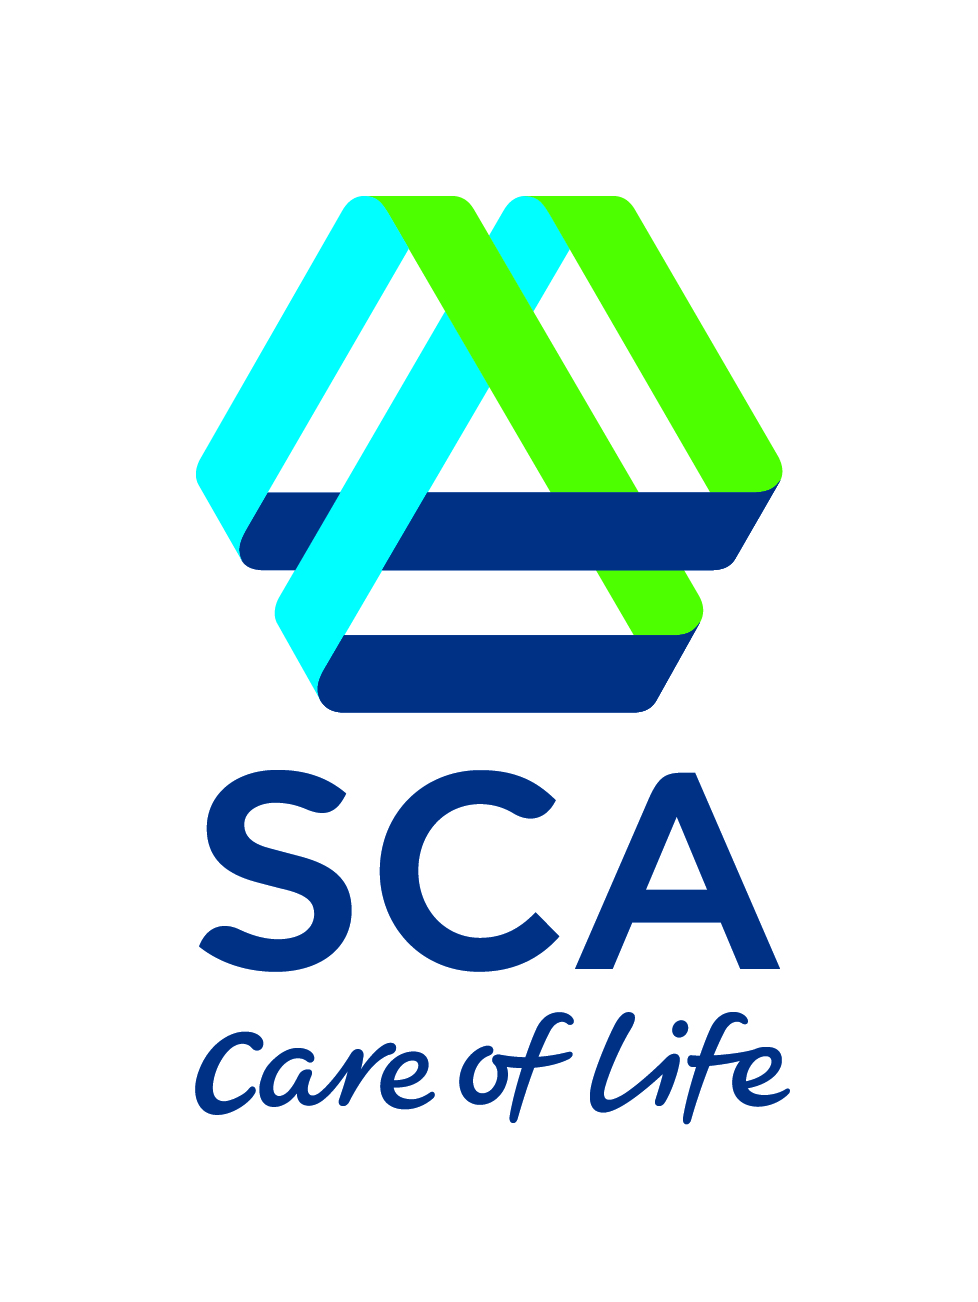 SCA_logo